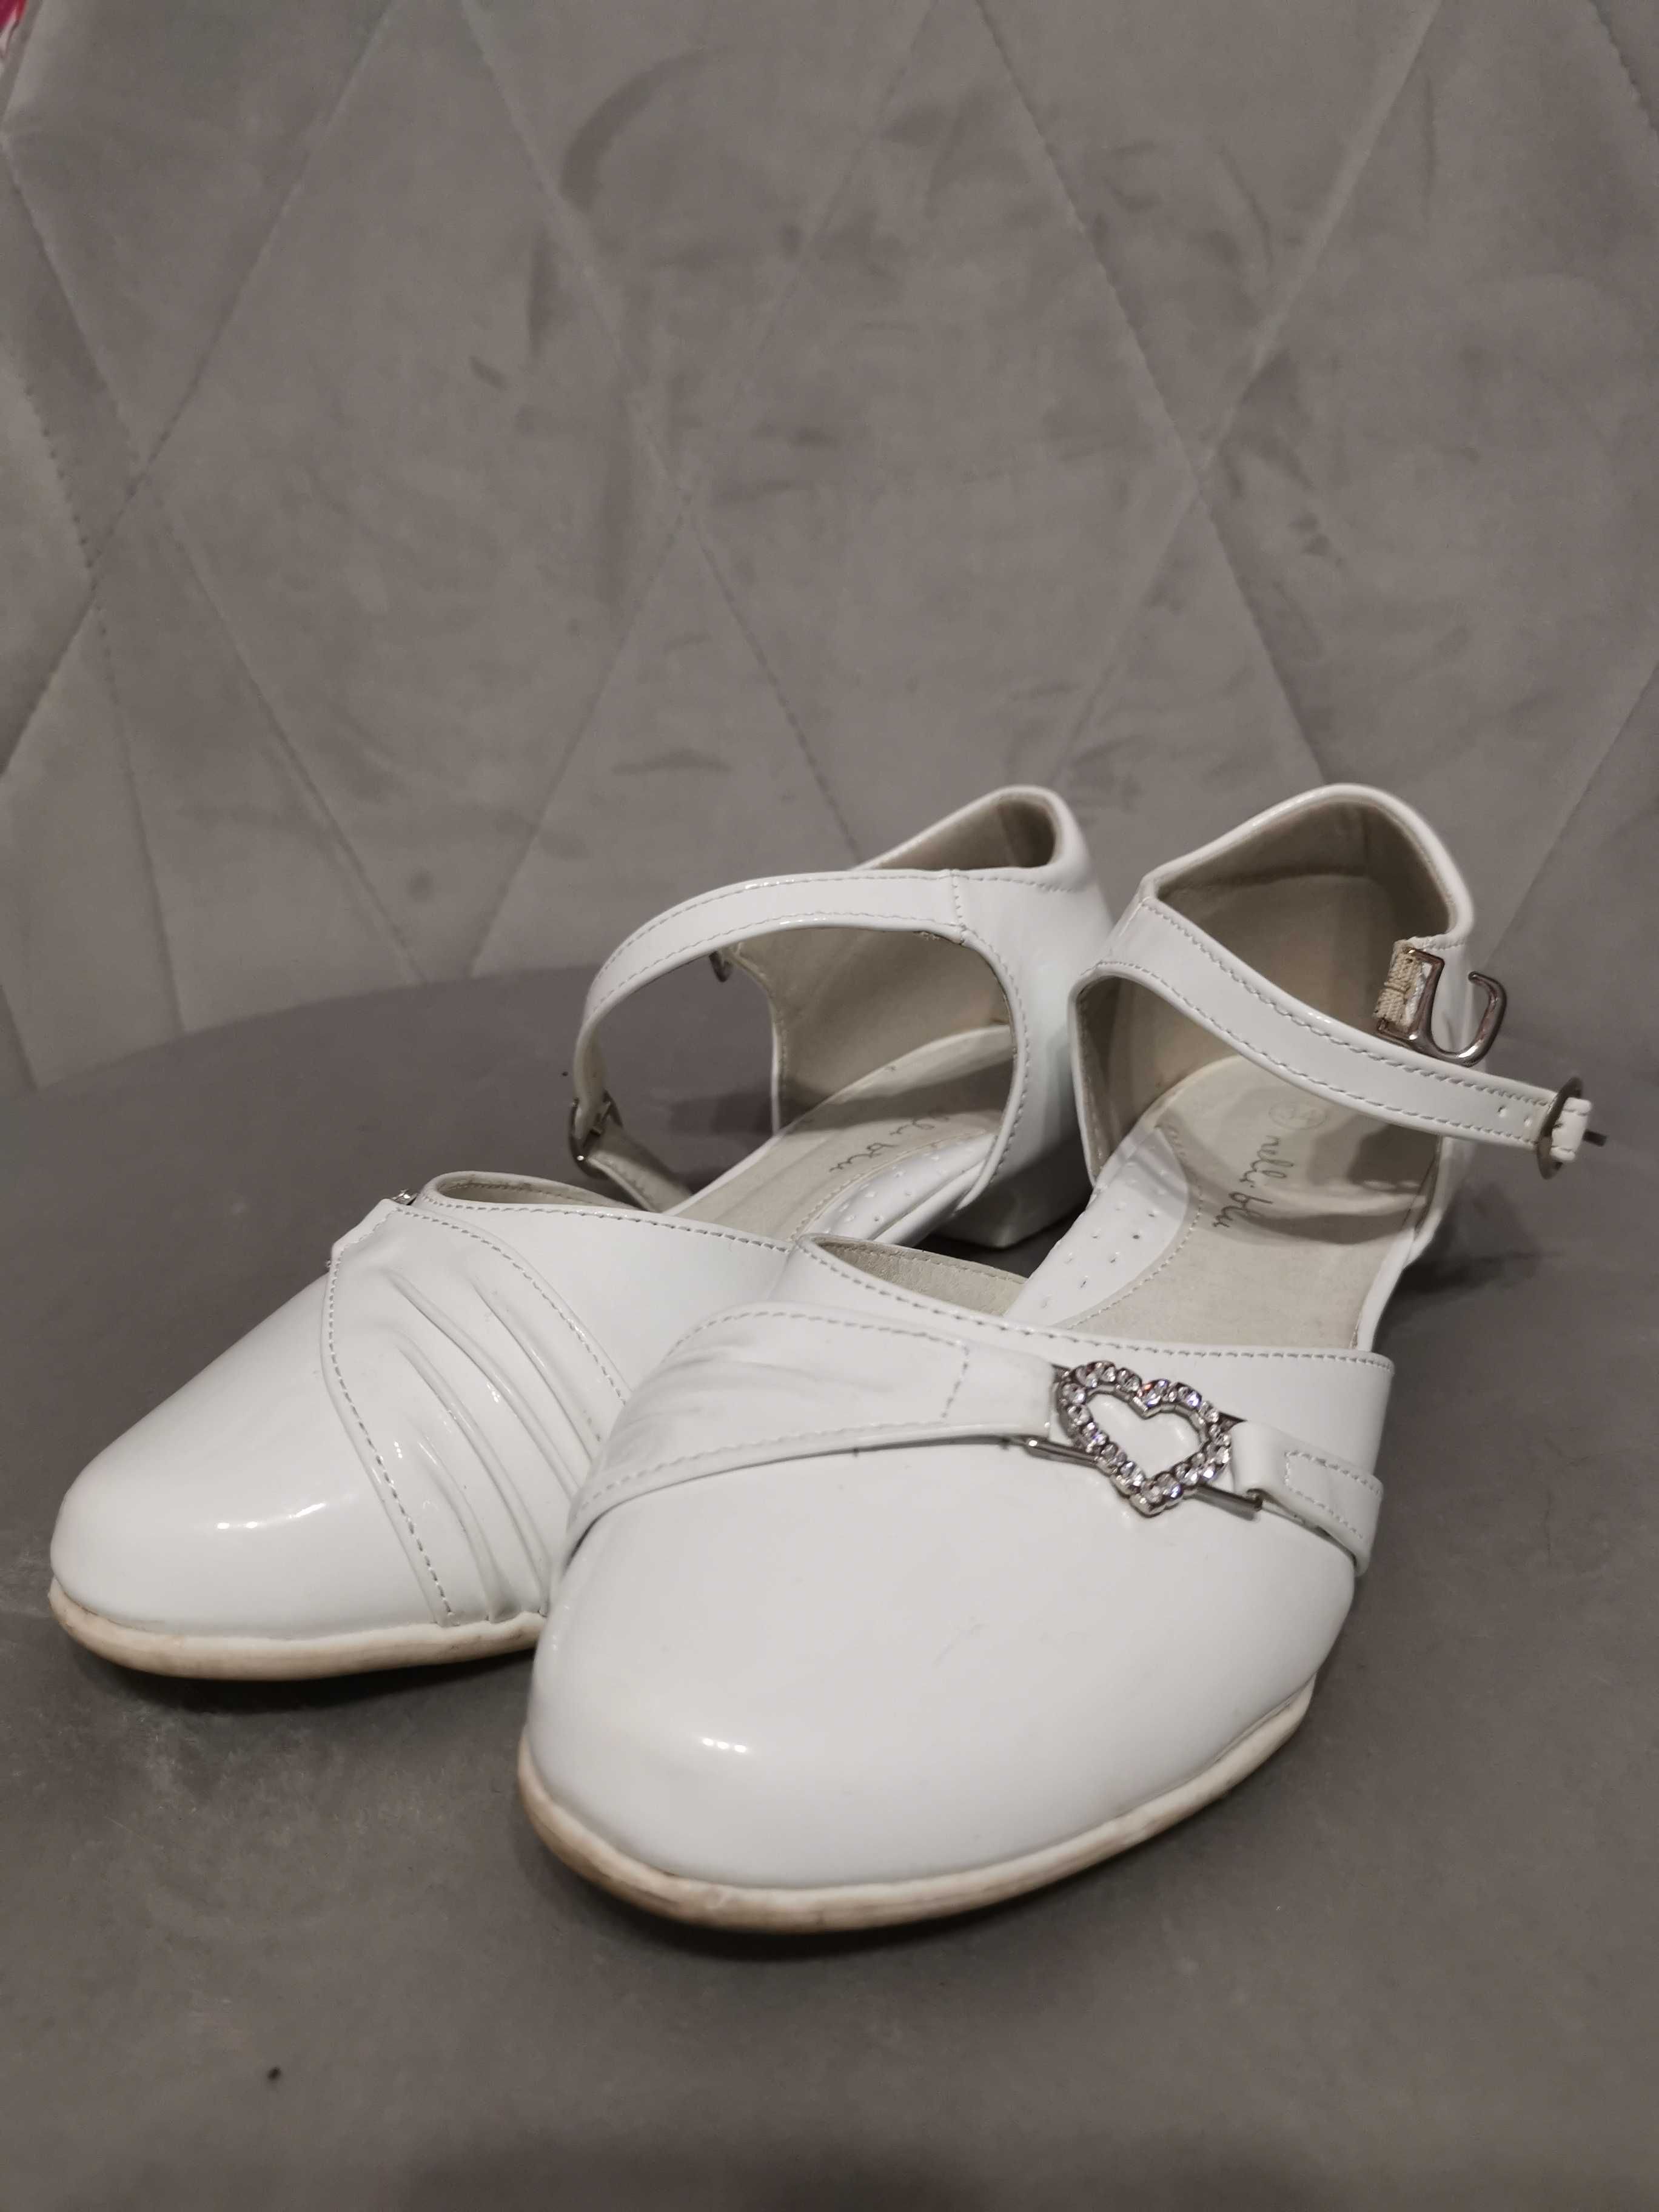 Białe buty komunijne, galowe rozmiar 34